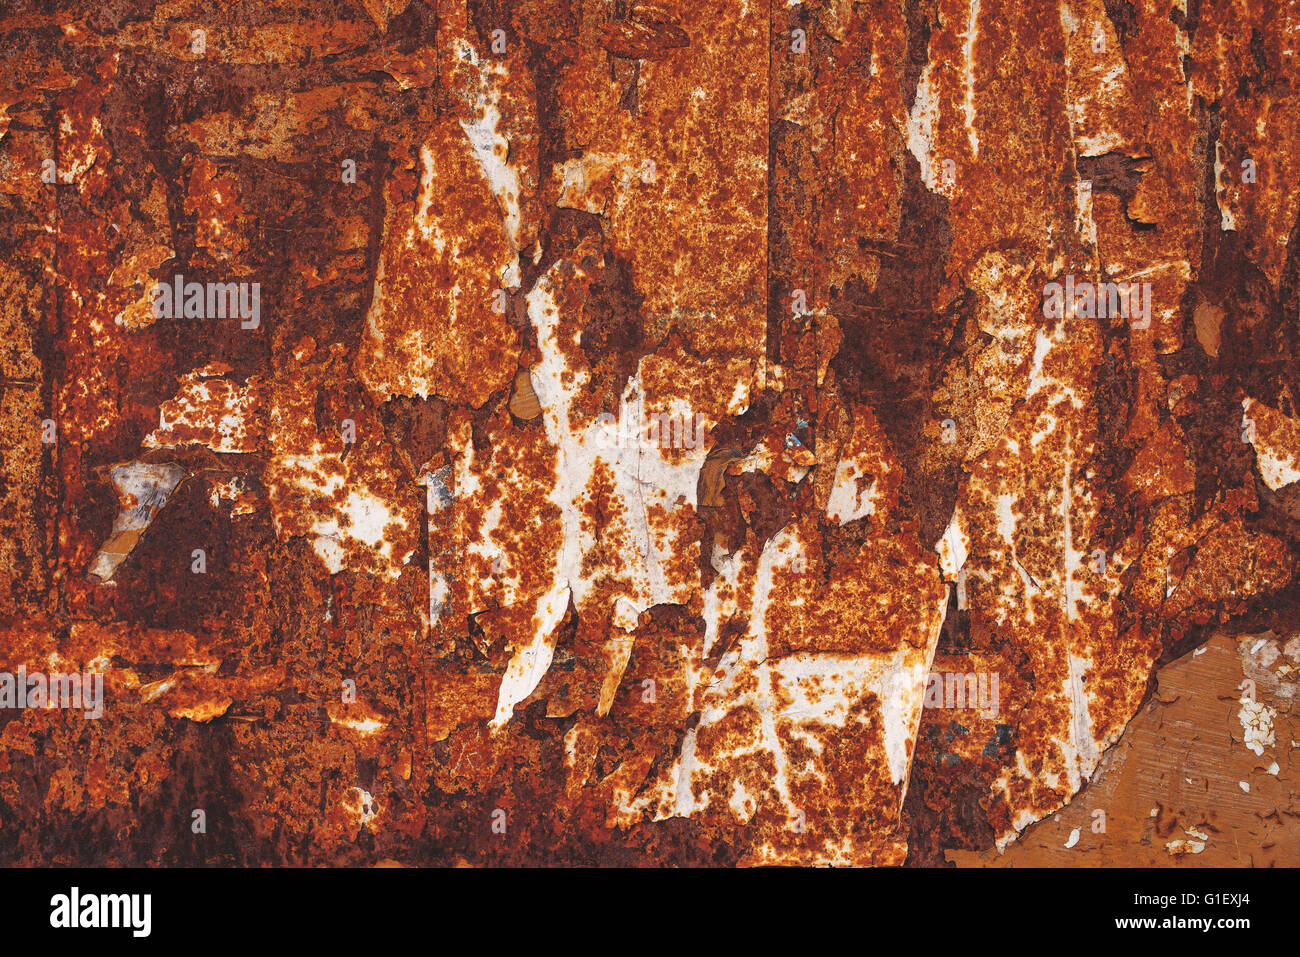 Plaque en métal corrodé, résumé la texture de surface métallique oxidating Banque D'Images